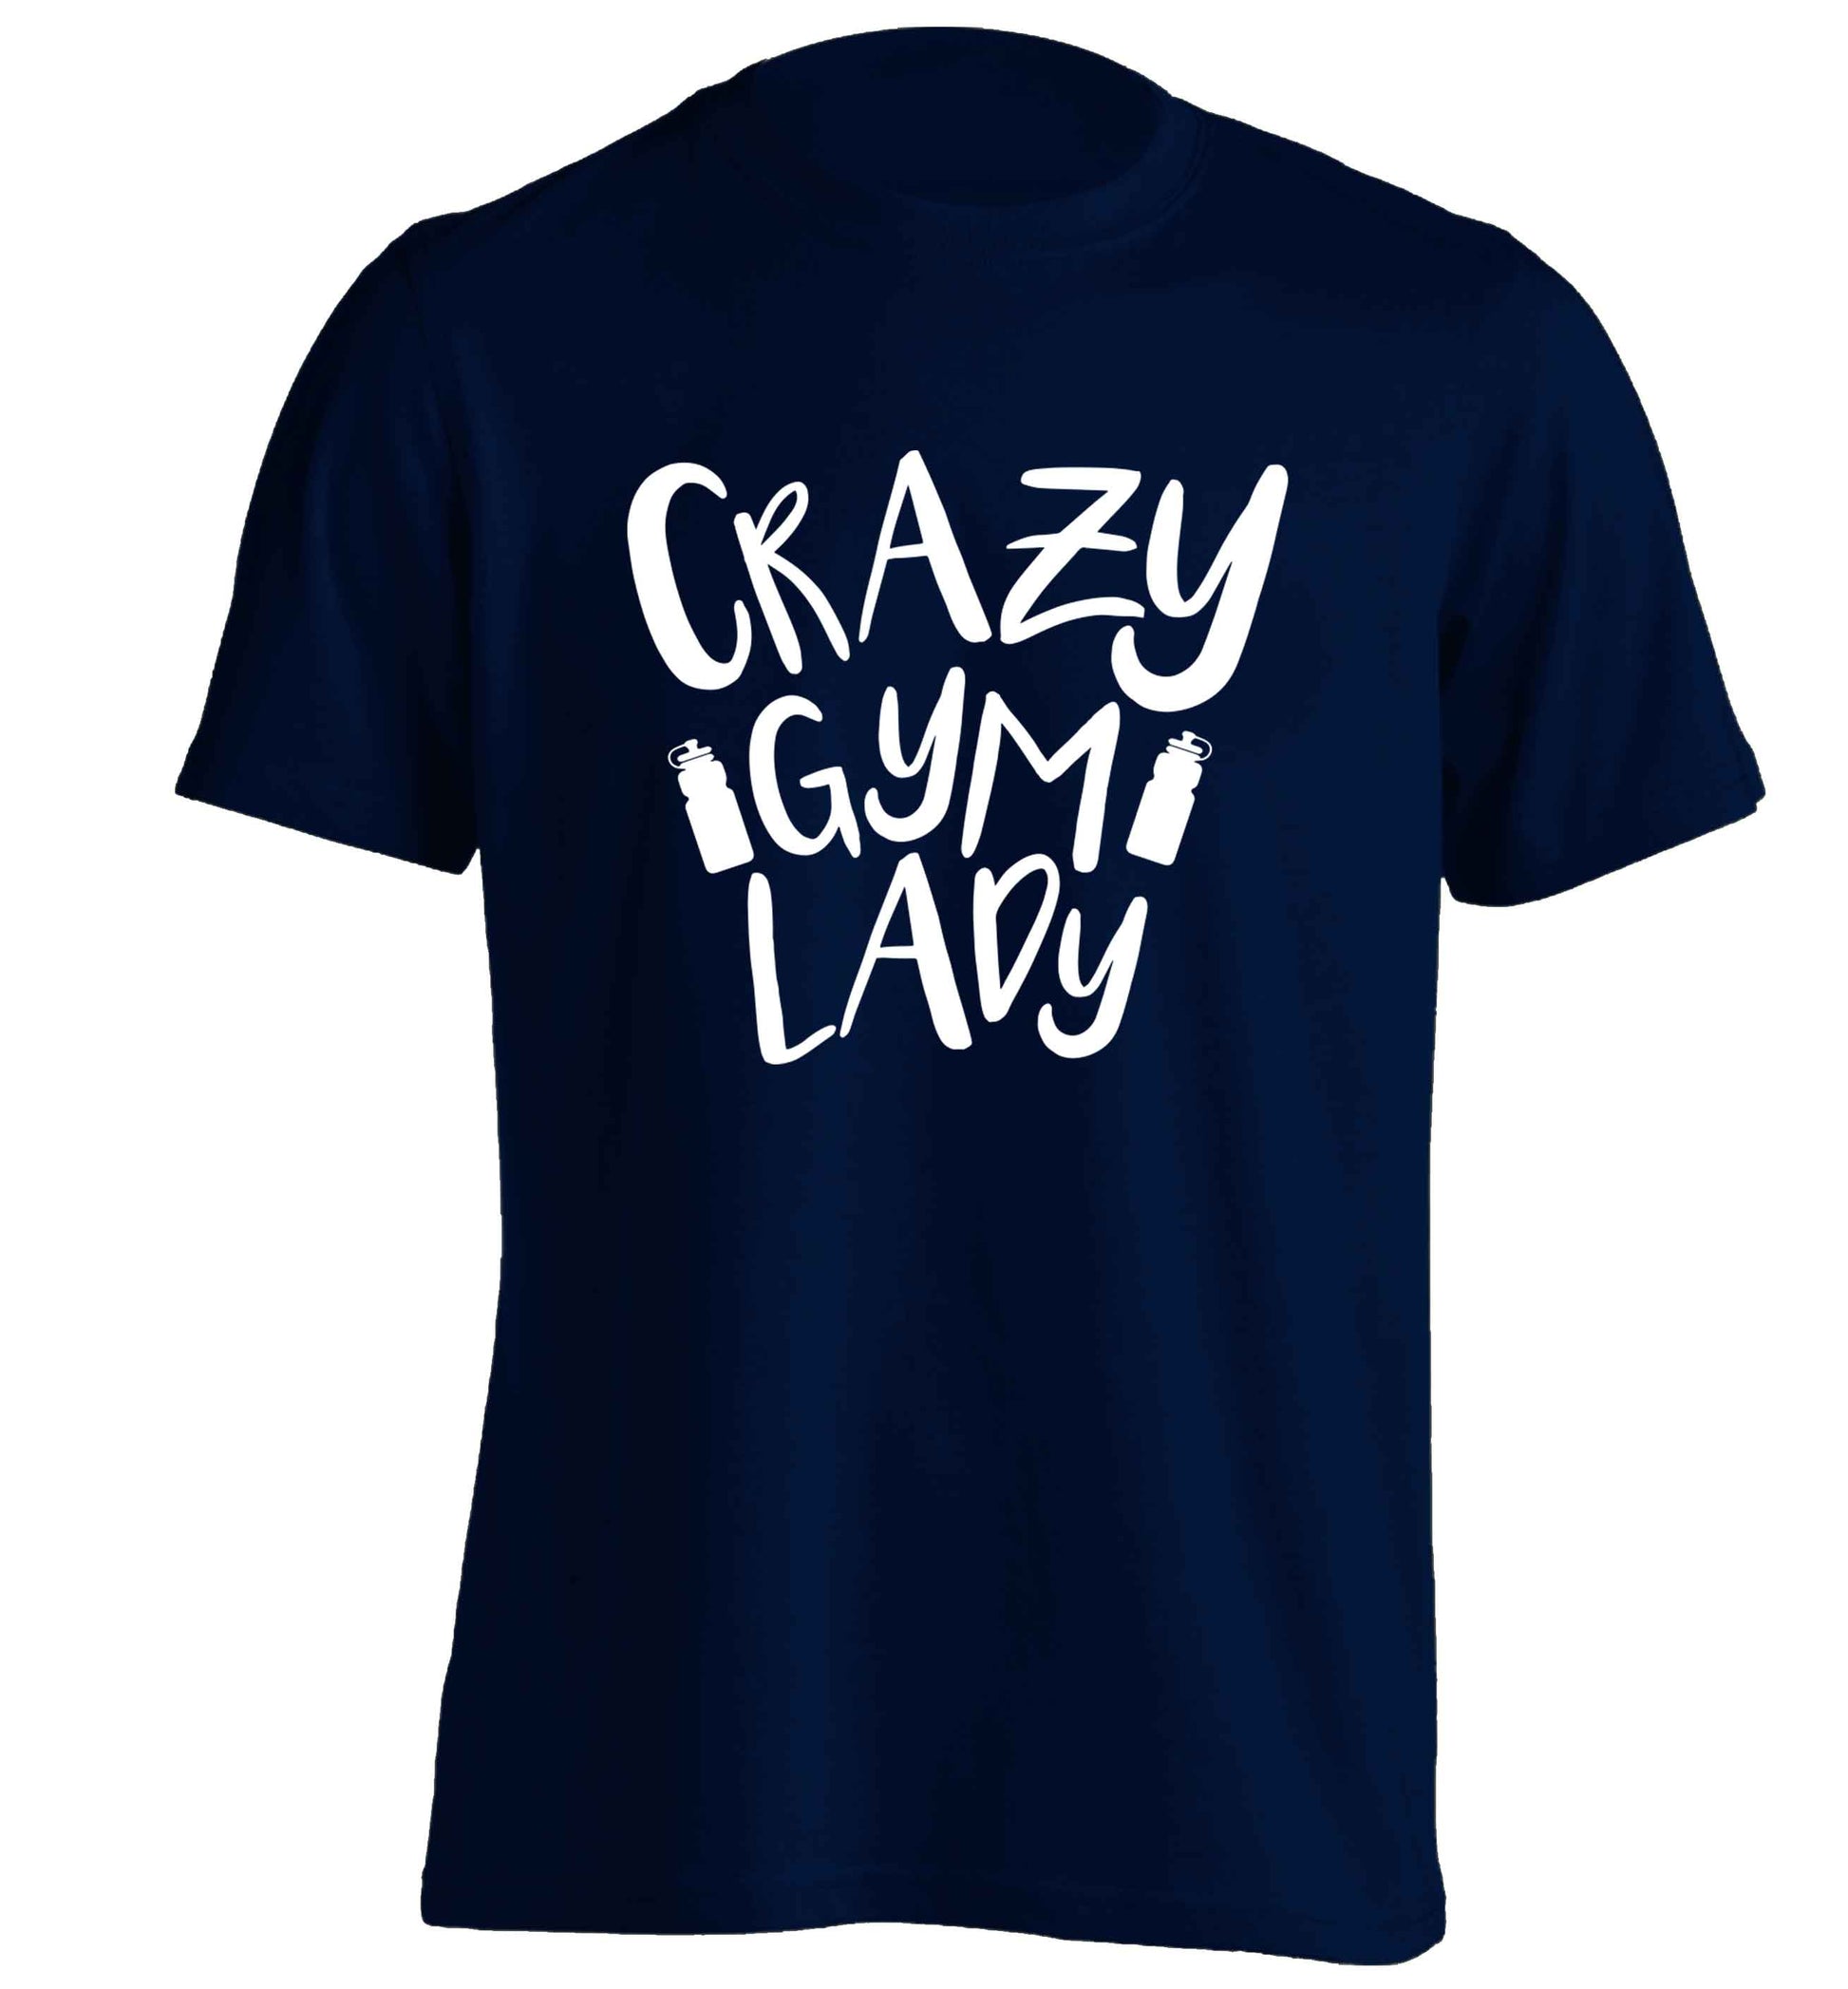 Crazy gym lady adults unisex navy Tshirt 2XL